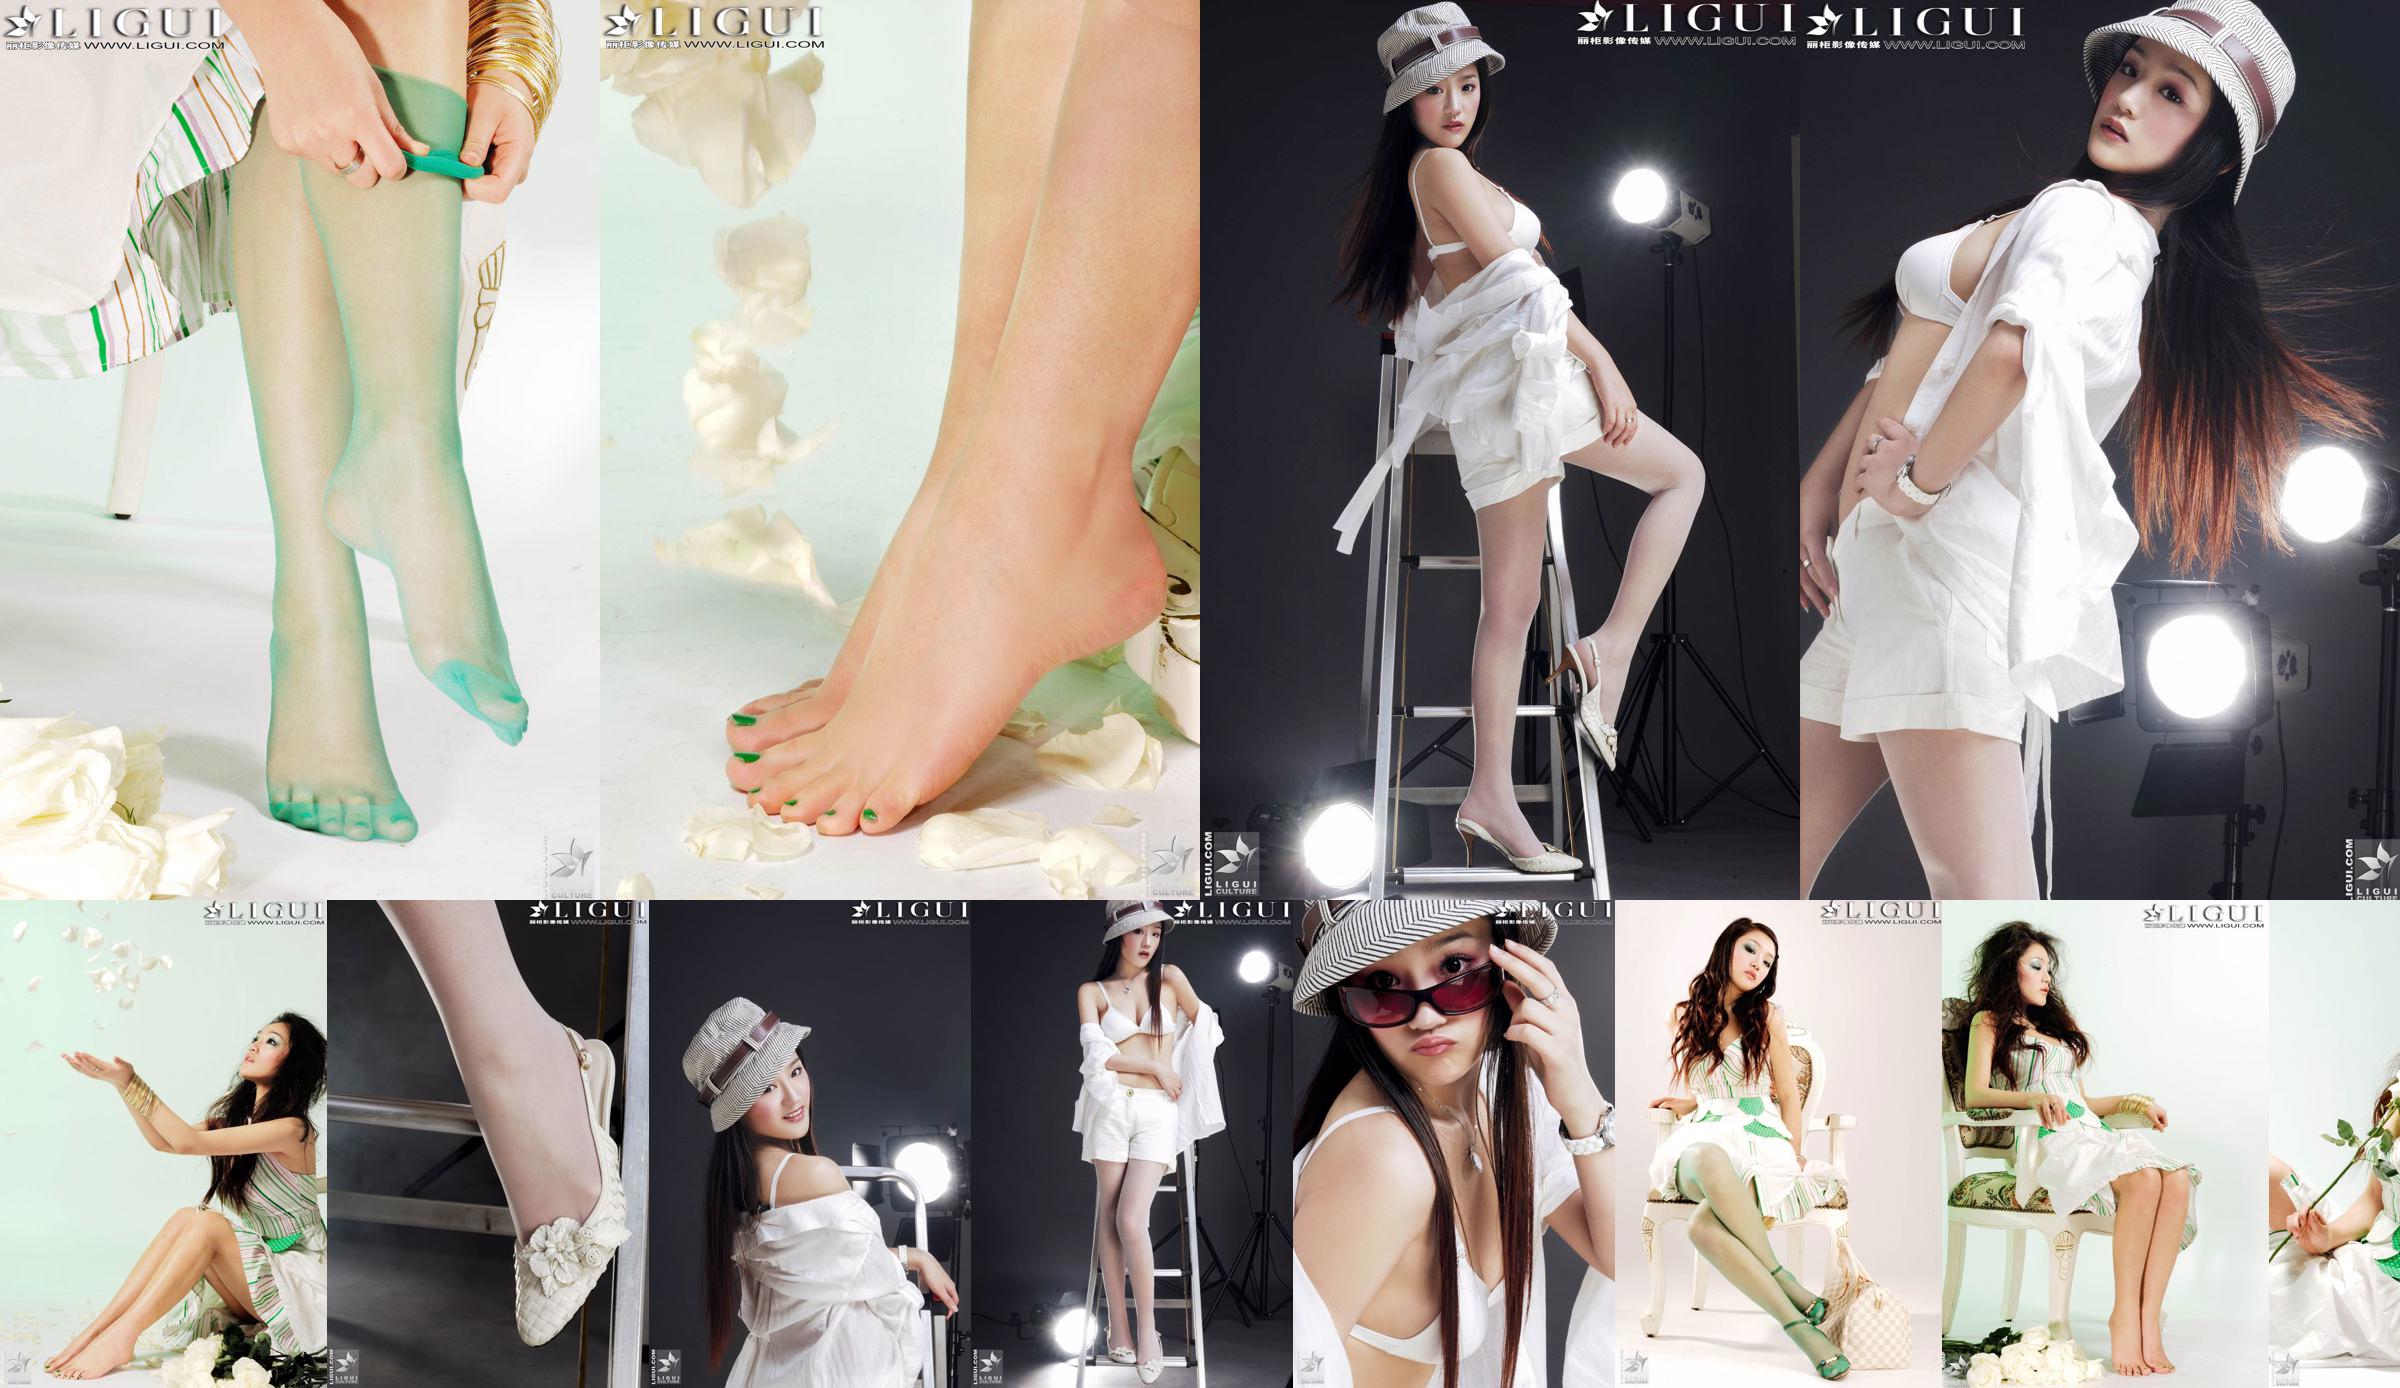 [丽 柜 贵 stopa LiGui] Zdjęcie "Modnej stopy" modelki Zhanga Jingyana przedstawiające piękne nogi i jedwabne stopy No.46627e Strona 8